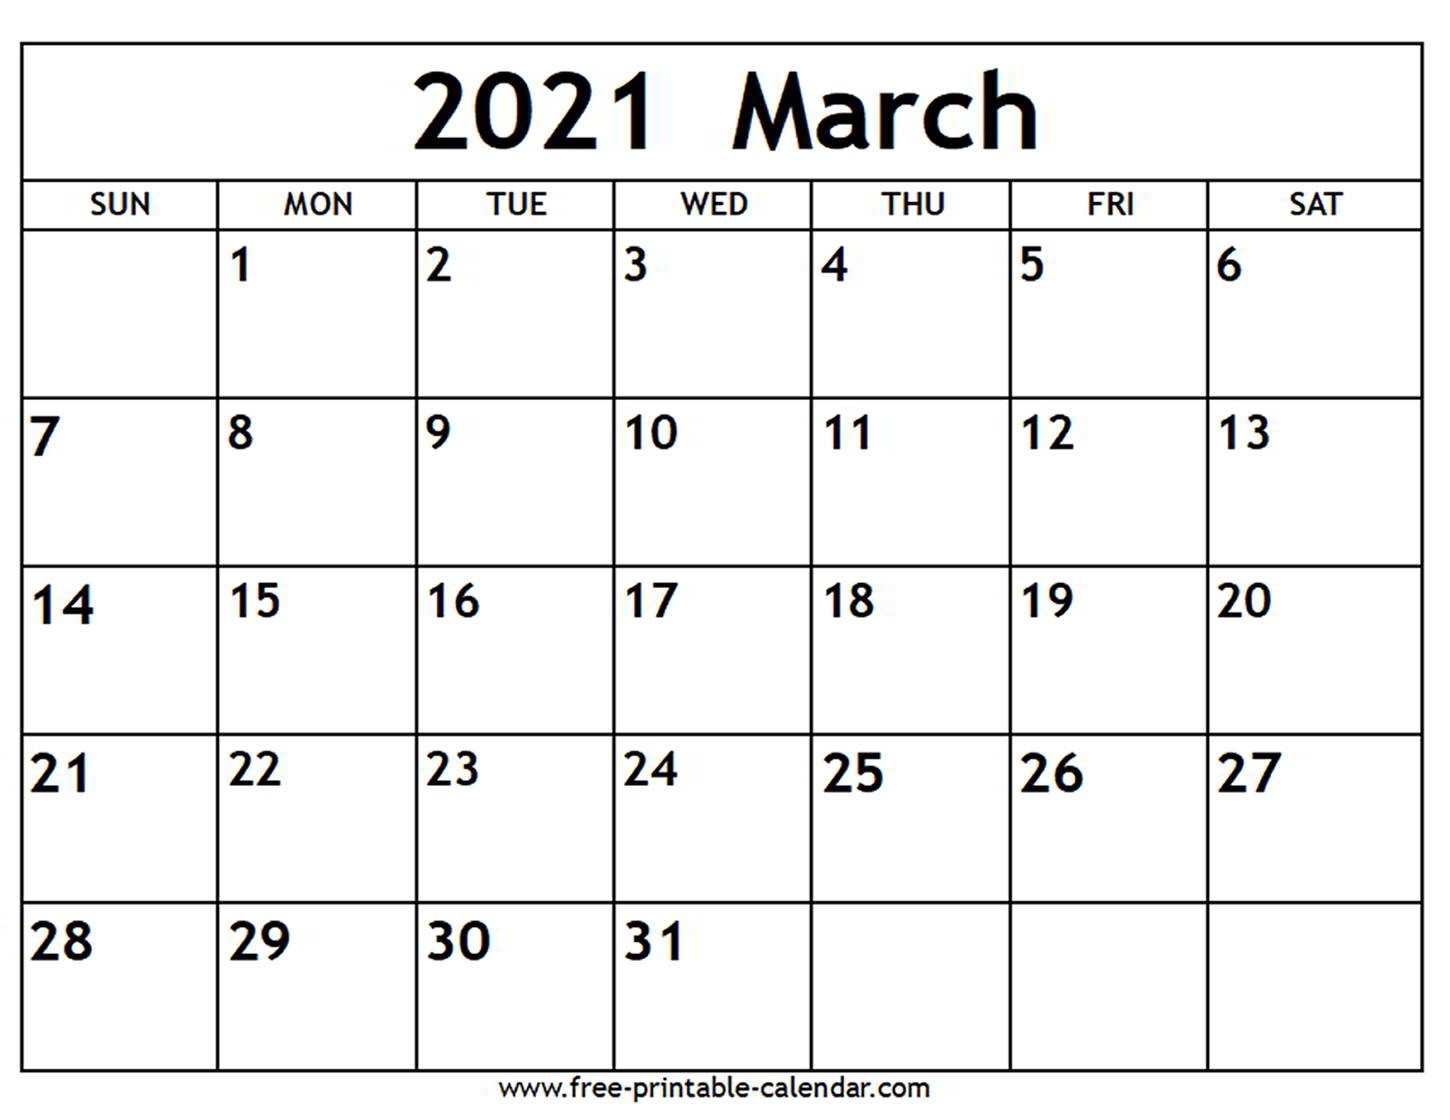 March 2021 Calendar - Free-Printable-Calendar-March 2021 Printable Calendar